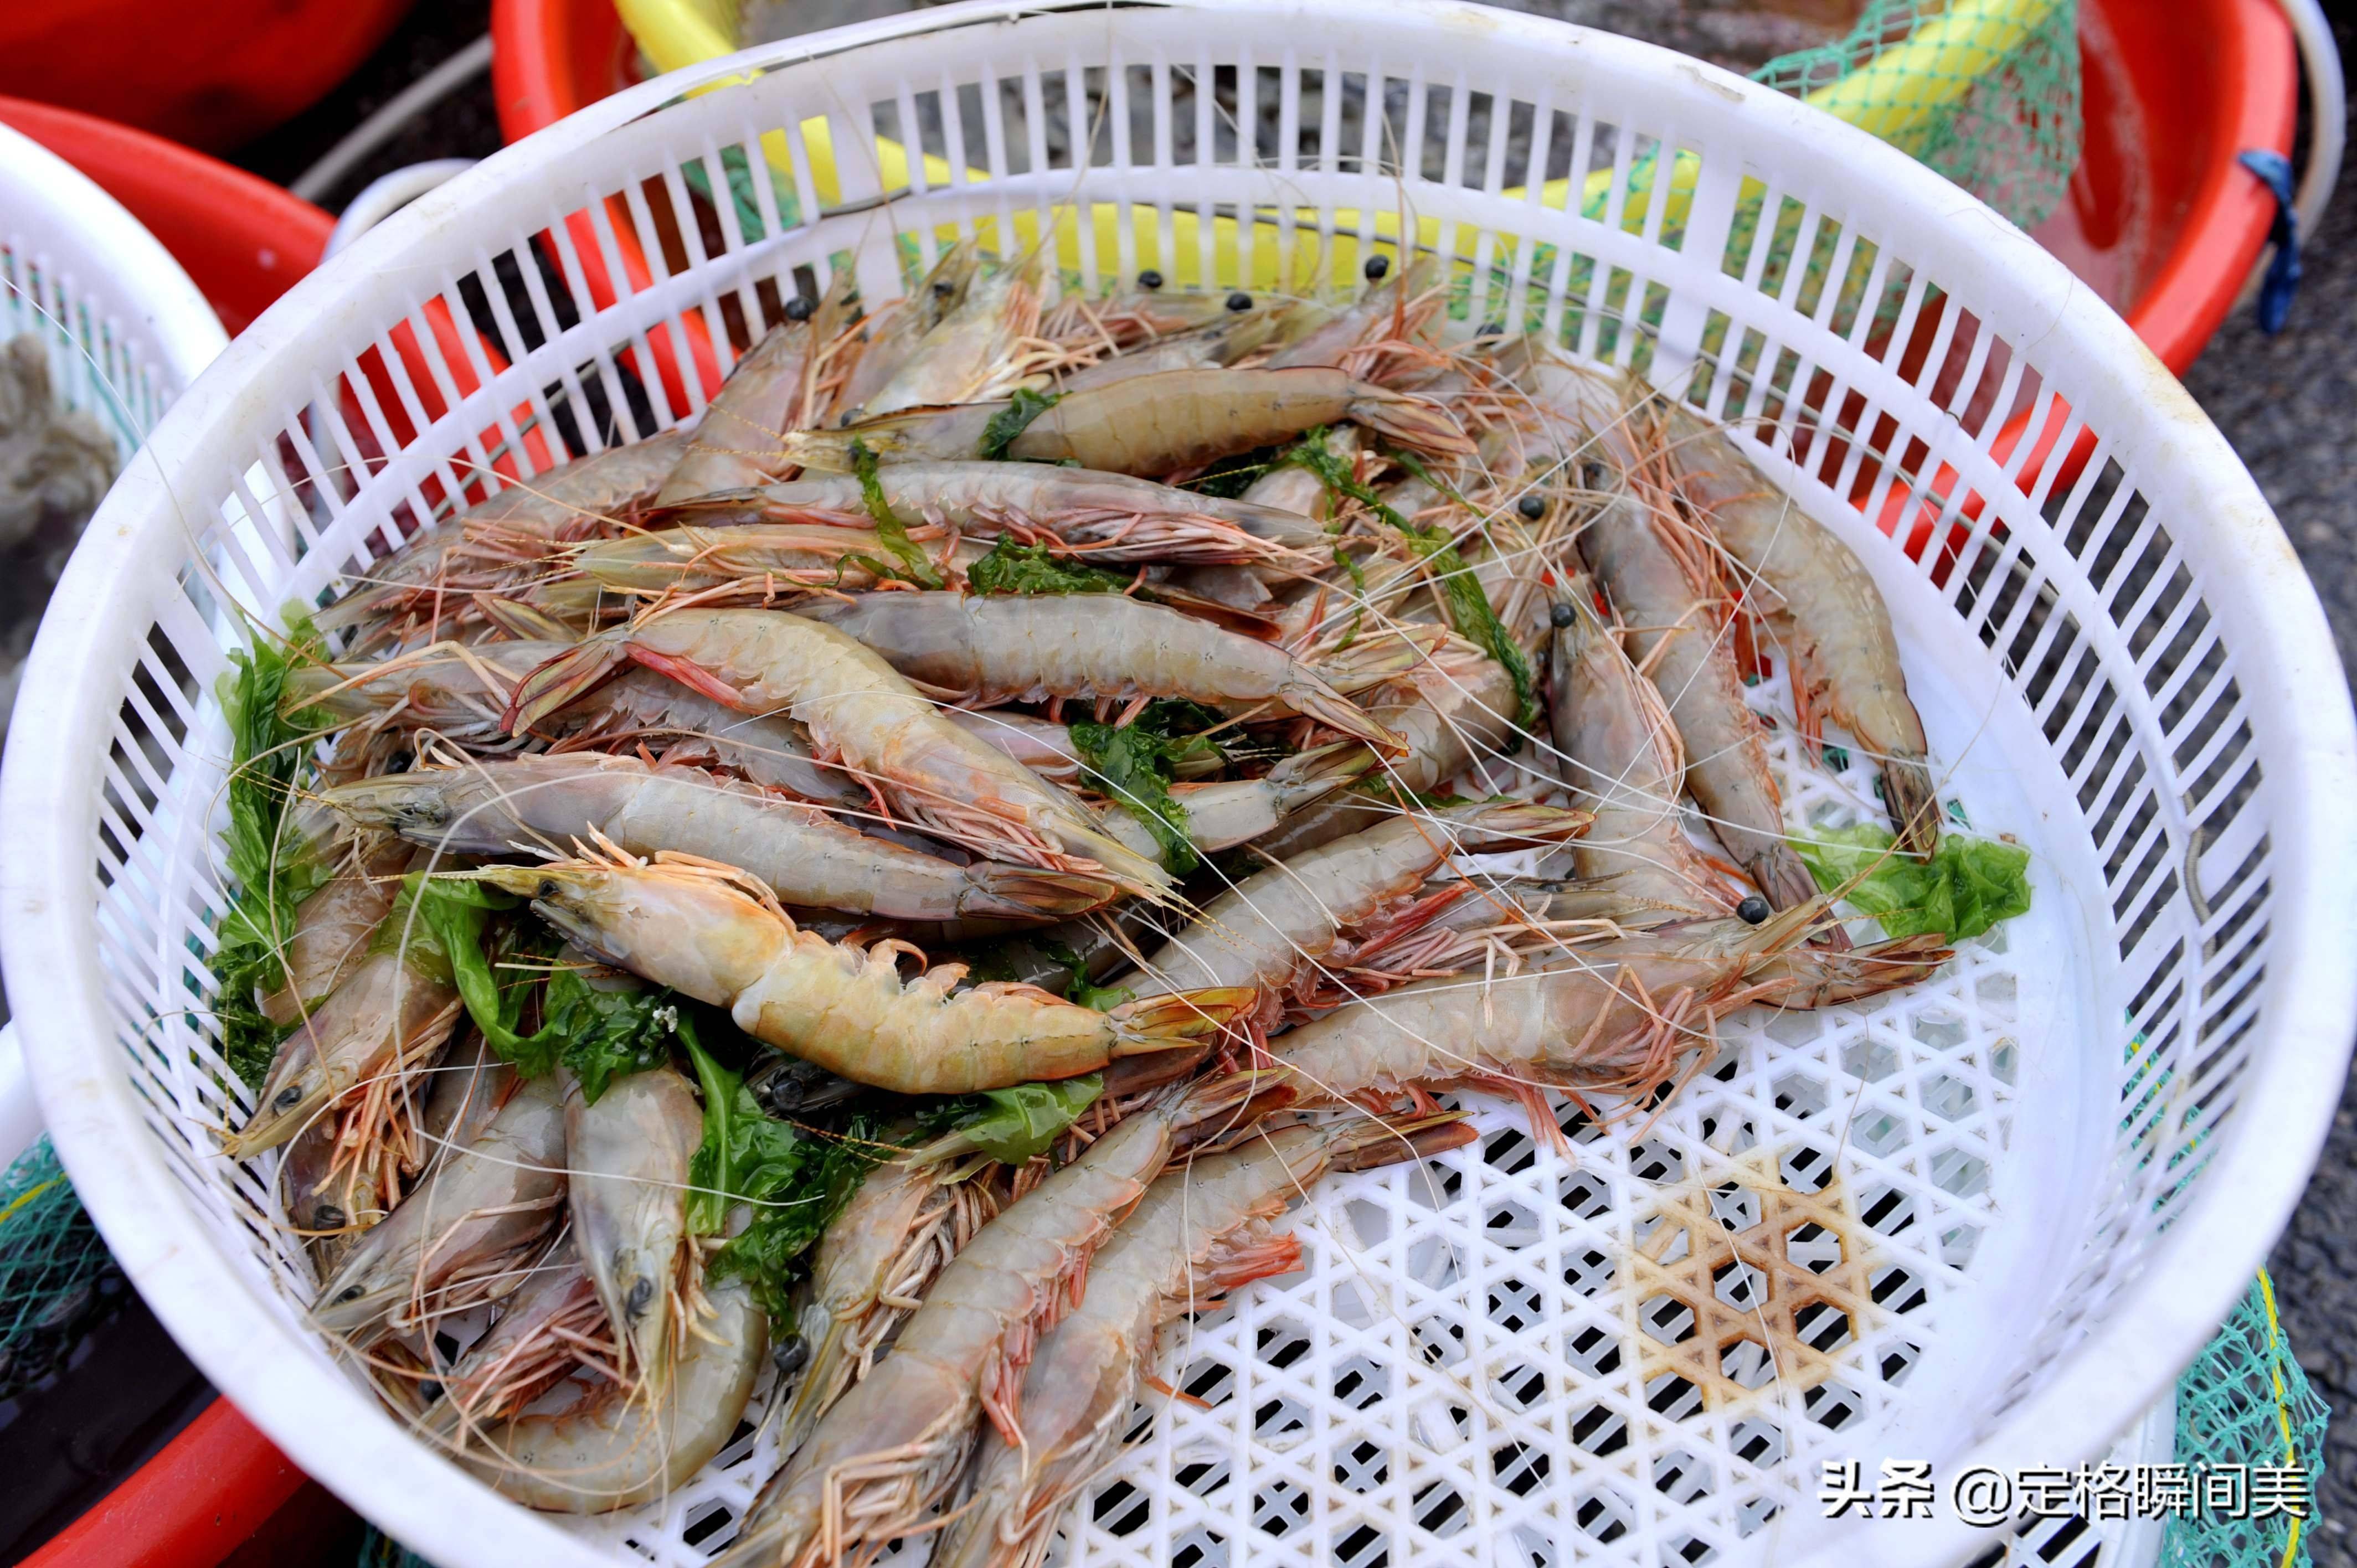 上大虾很多,外国进口来的阿根廷红虾,高背长额虾,北国赤虾等海虾种类